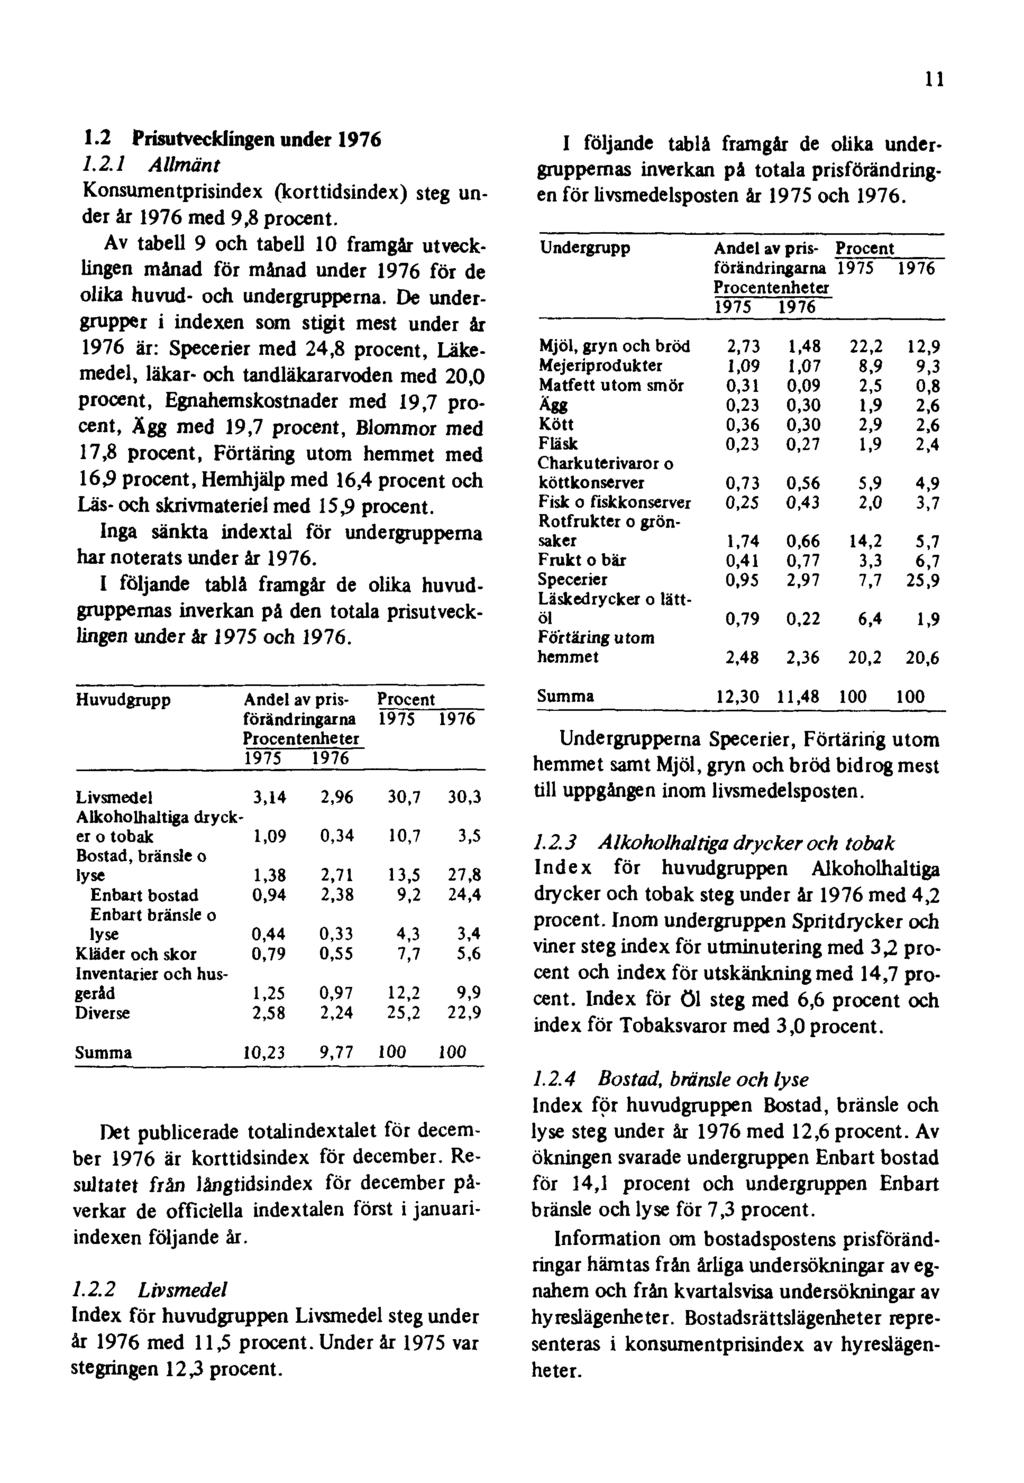 11 1.2 Prisutvecklingen under 1976 1.2.1 Allmänt Konsumentprisindex (korttidsindex) steg under år 1976 med 9,8 procent.